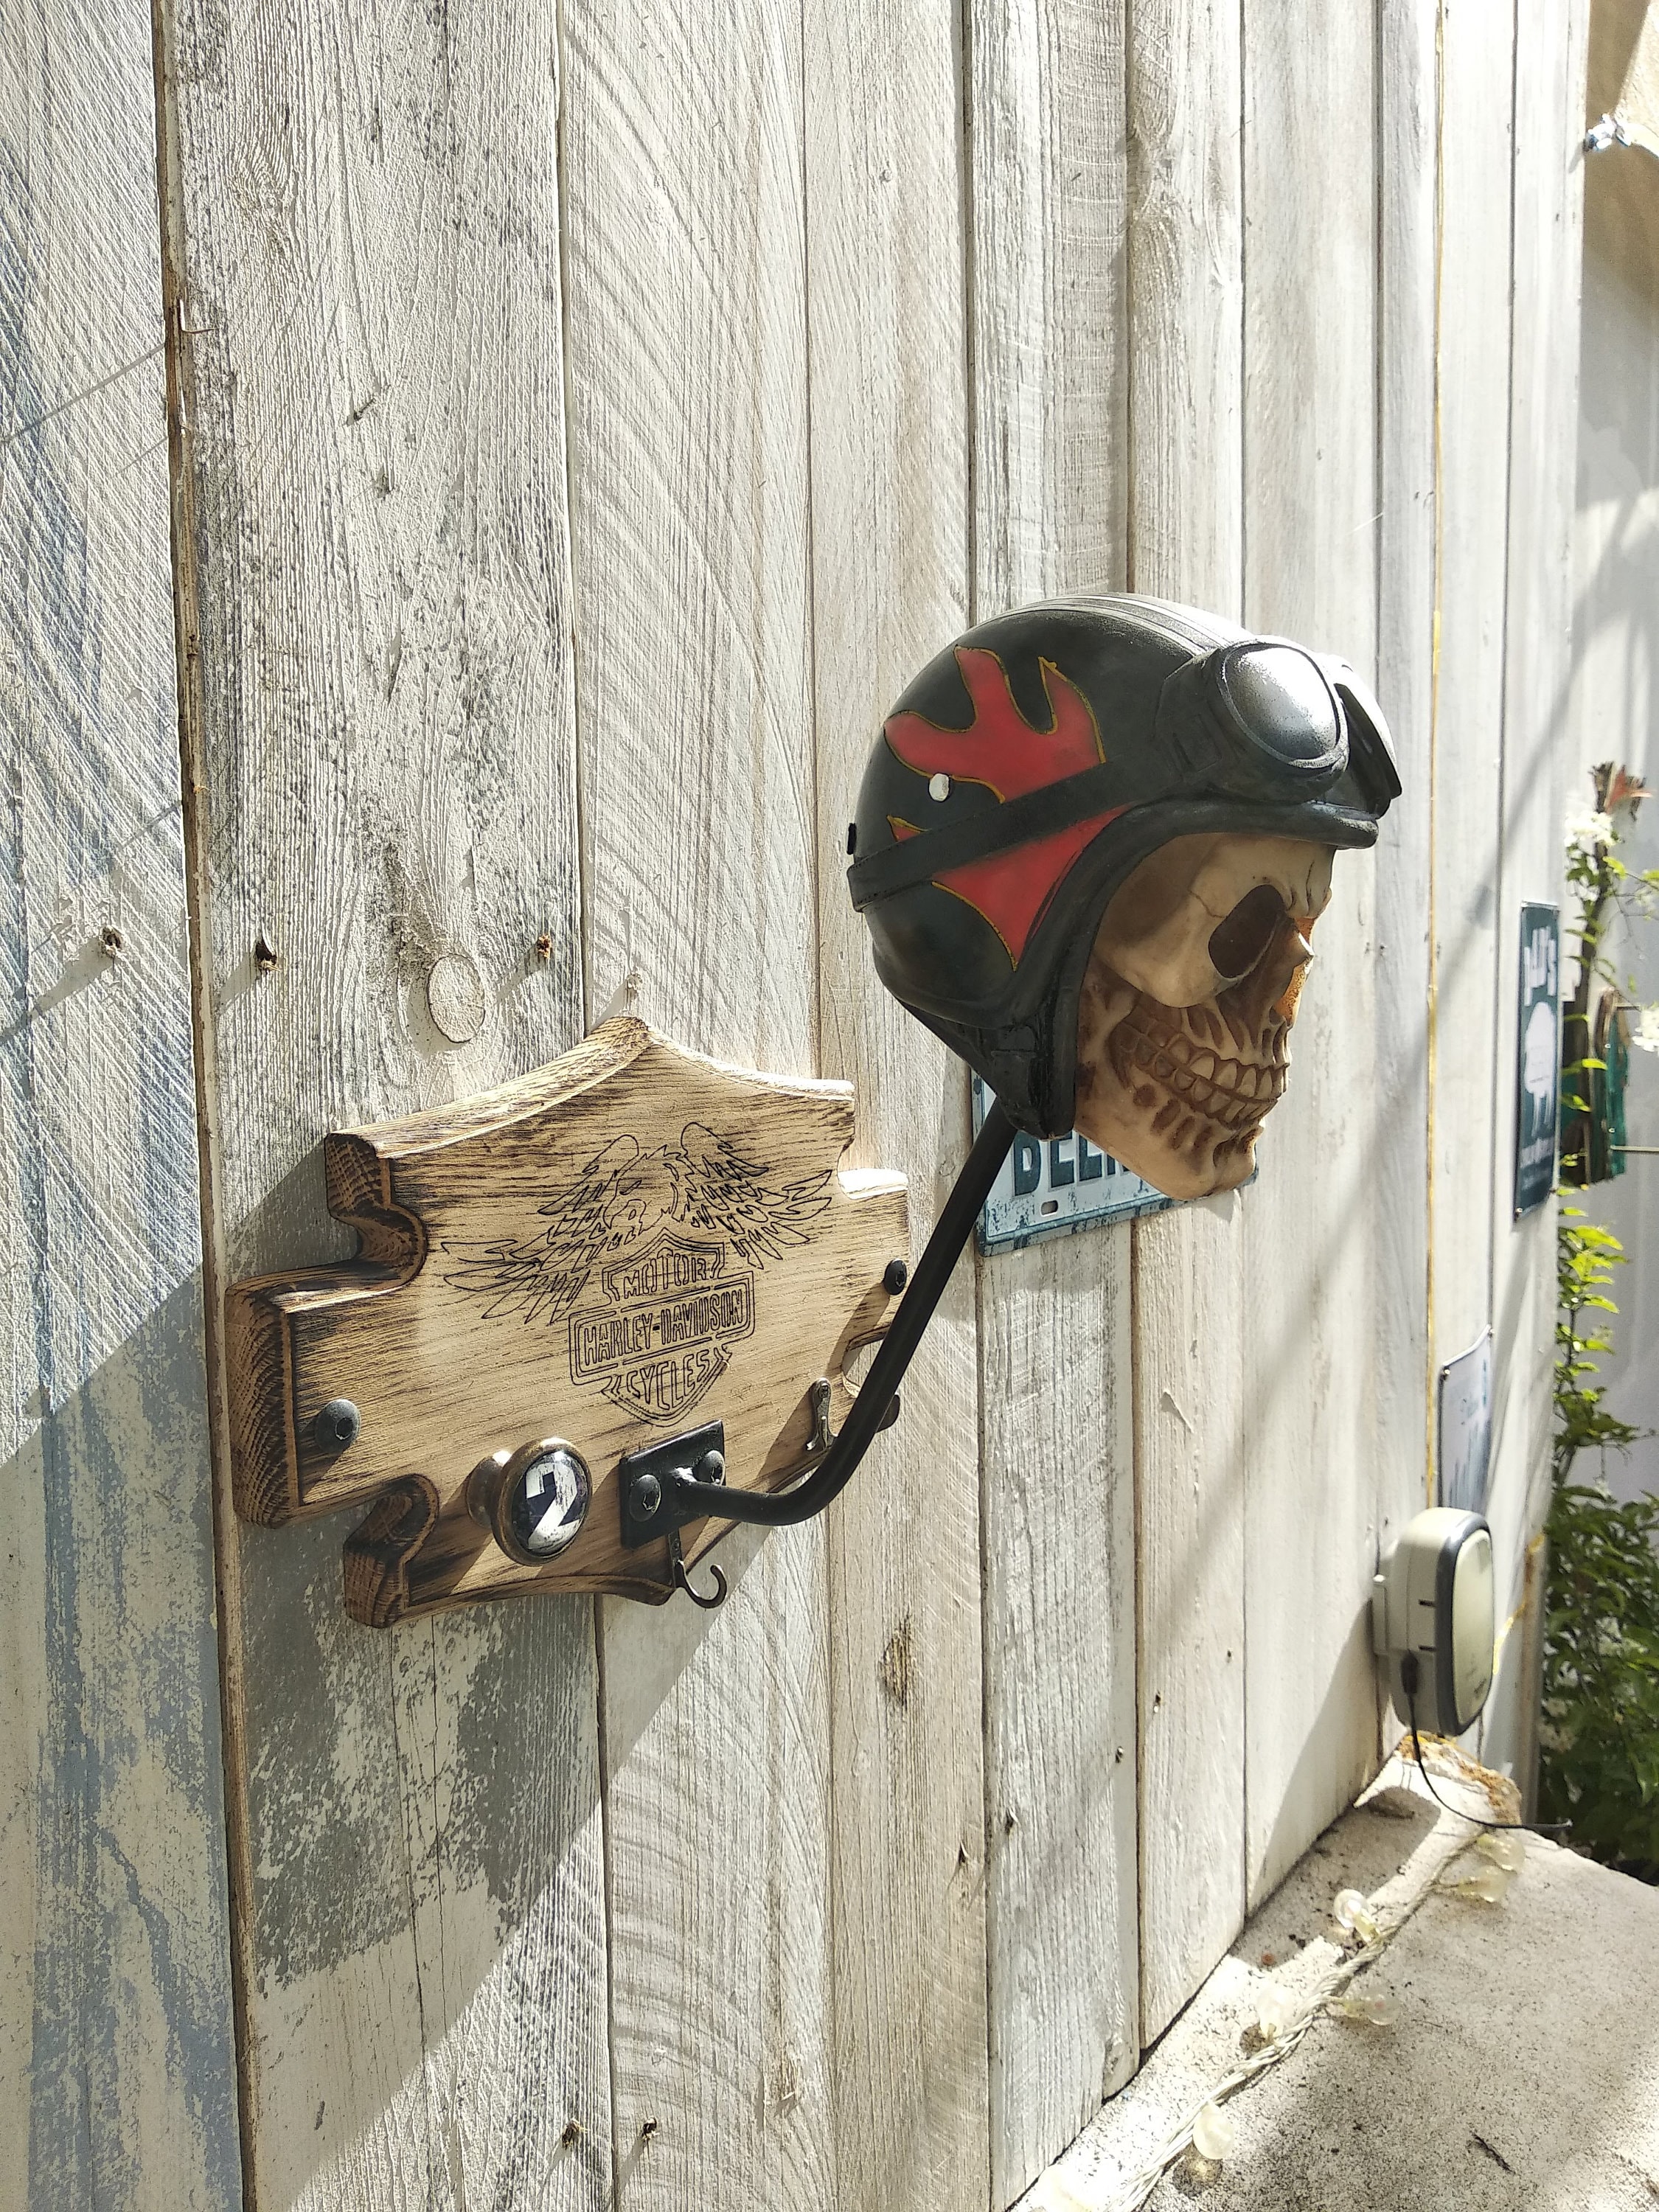 Porte clés casque de moto noir personnalisé avec une gravure